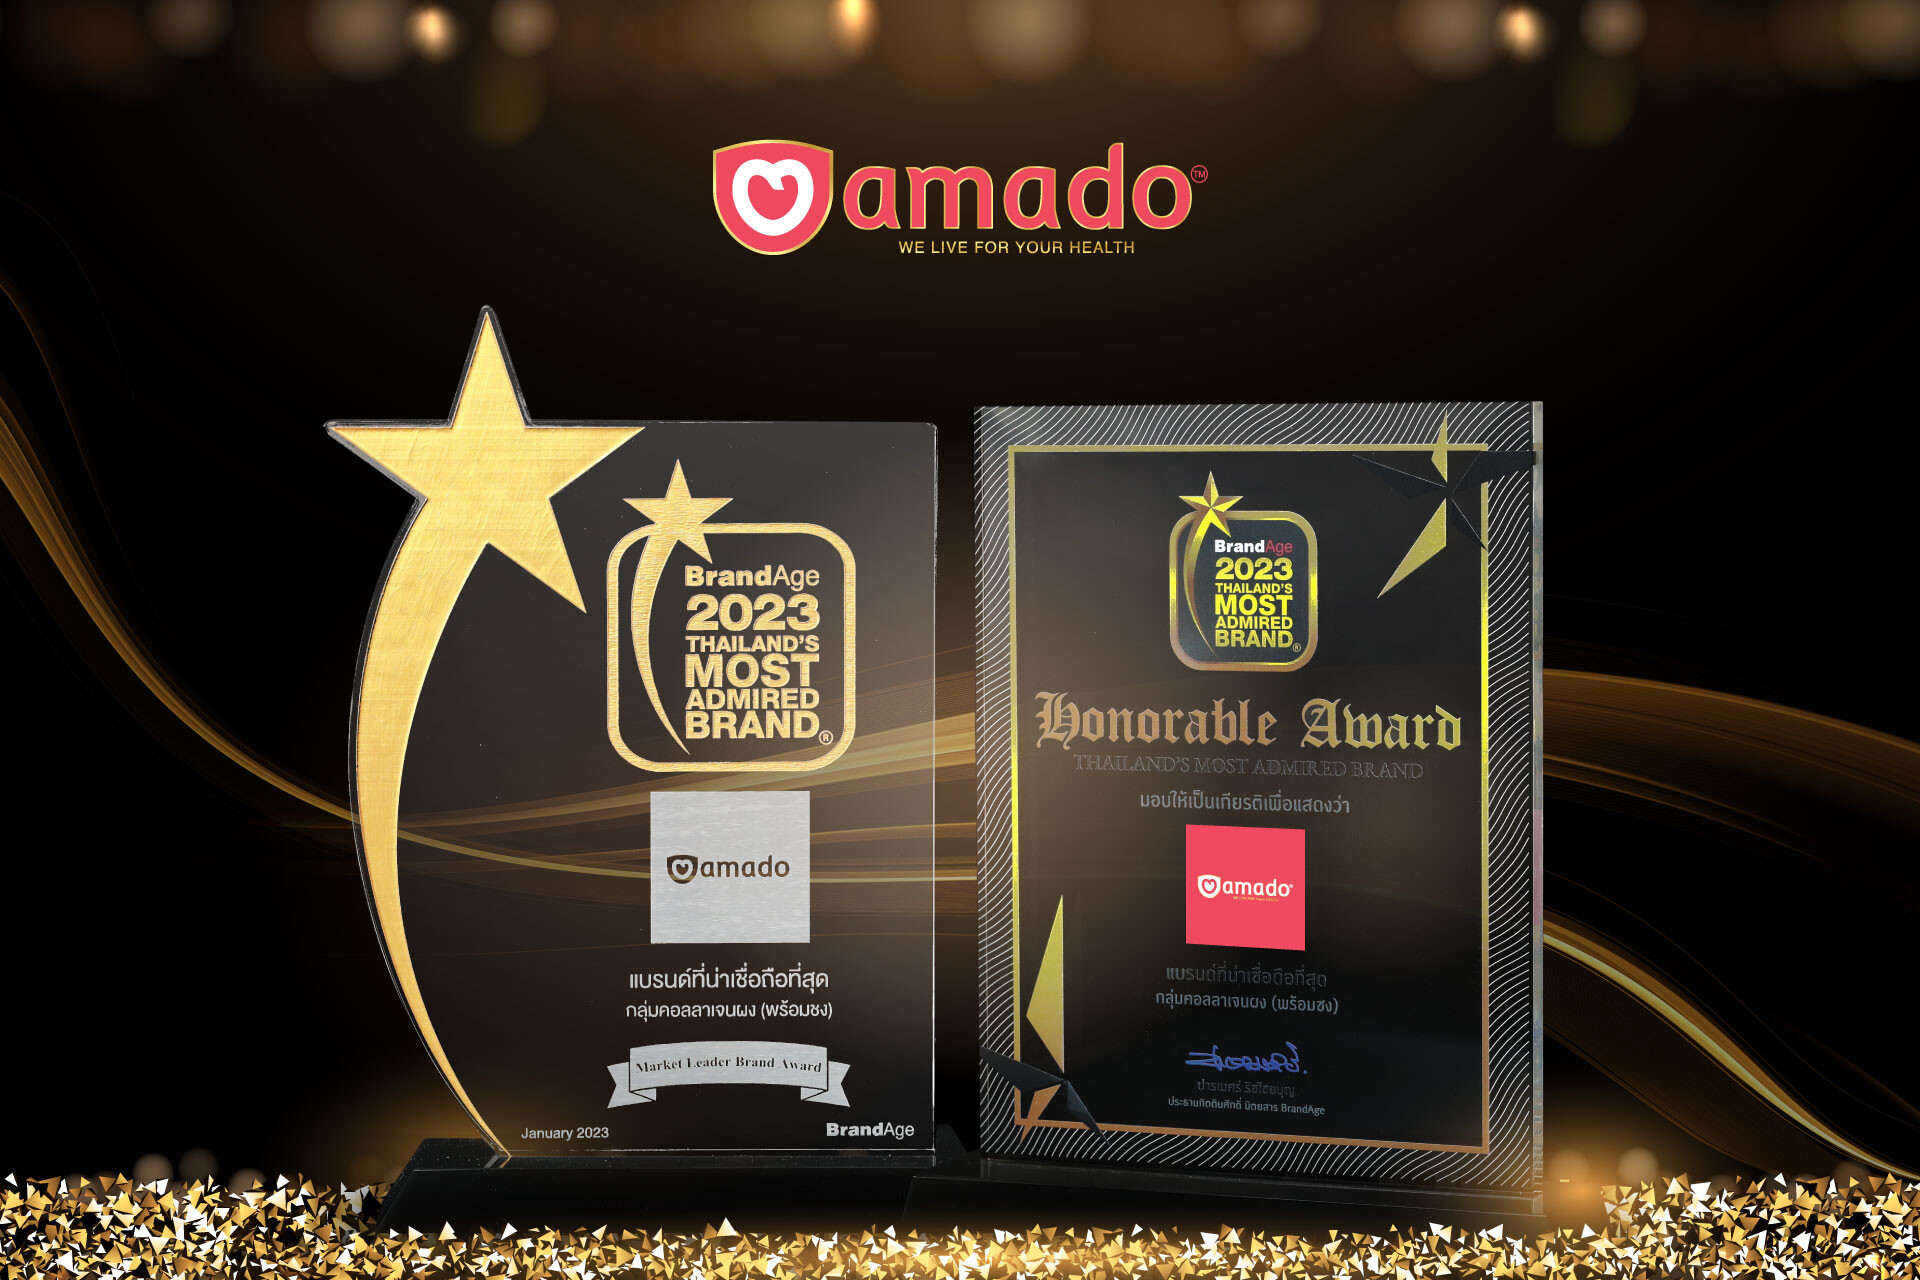 "อมาโด้" ตอกย้ำความสำเร็จคว้าอีก 2 รางวัล 2023 Thailand's Most Admired Brand แบรนด์ที่น่าเชื่อถือที่สุด และรางวัล Market Leader Brand Award